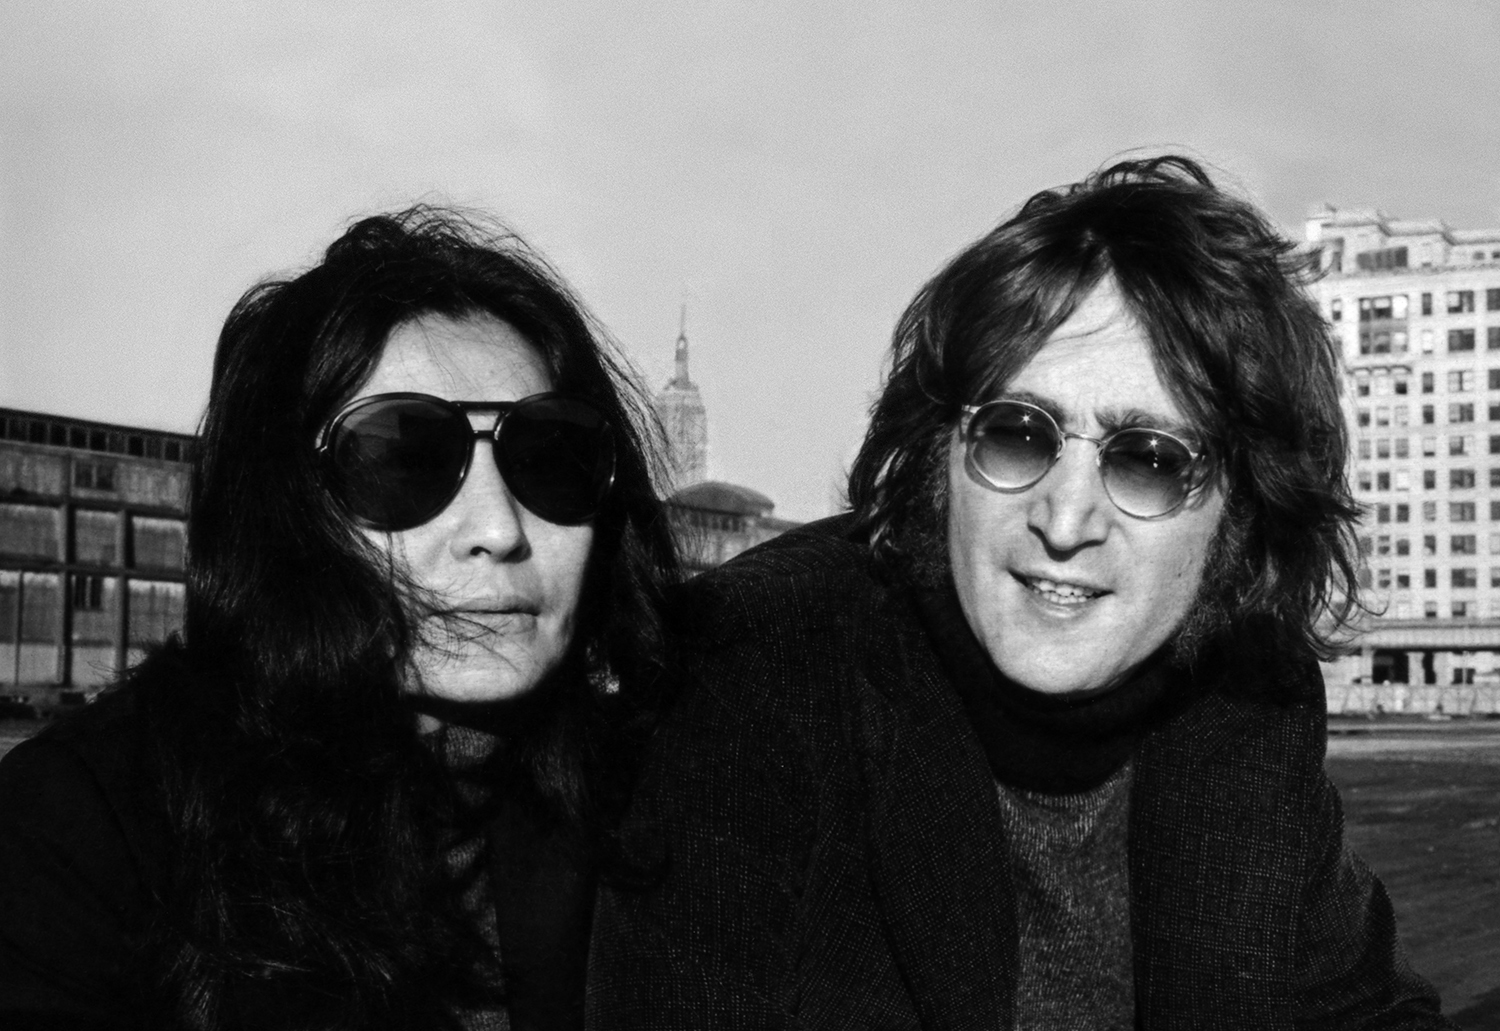 John Lennon 67